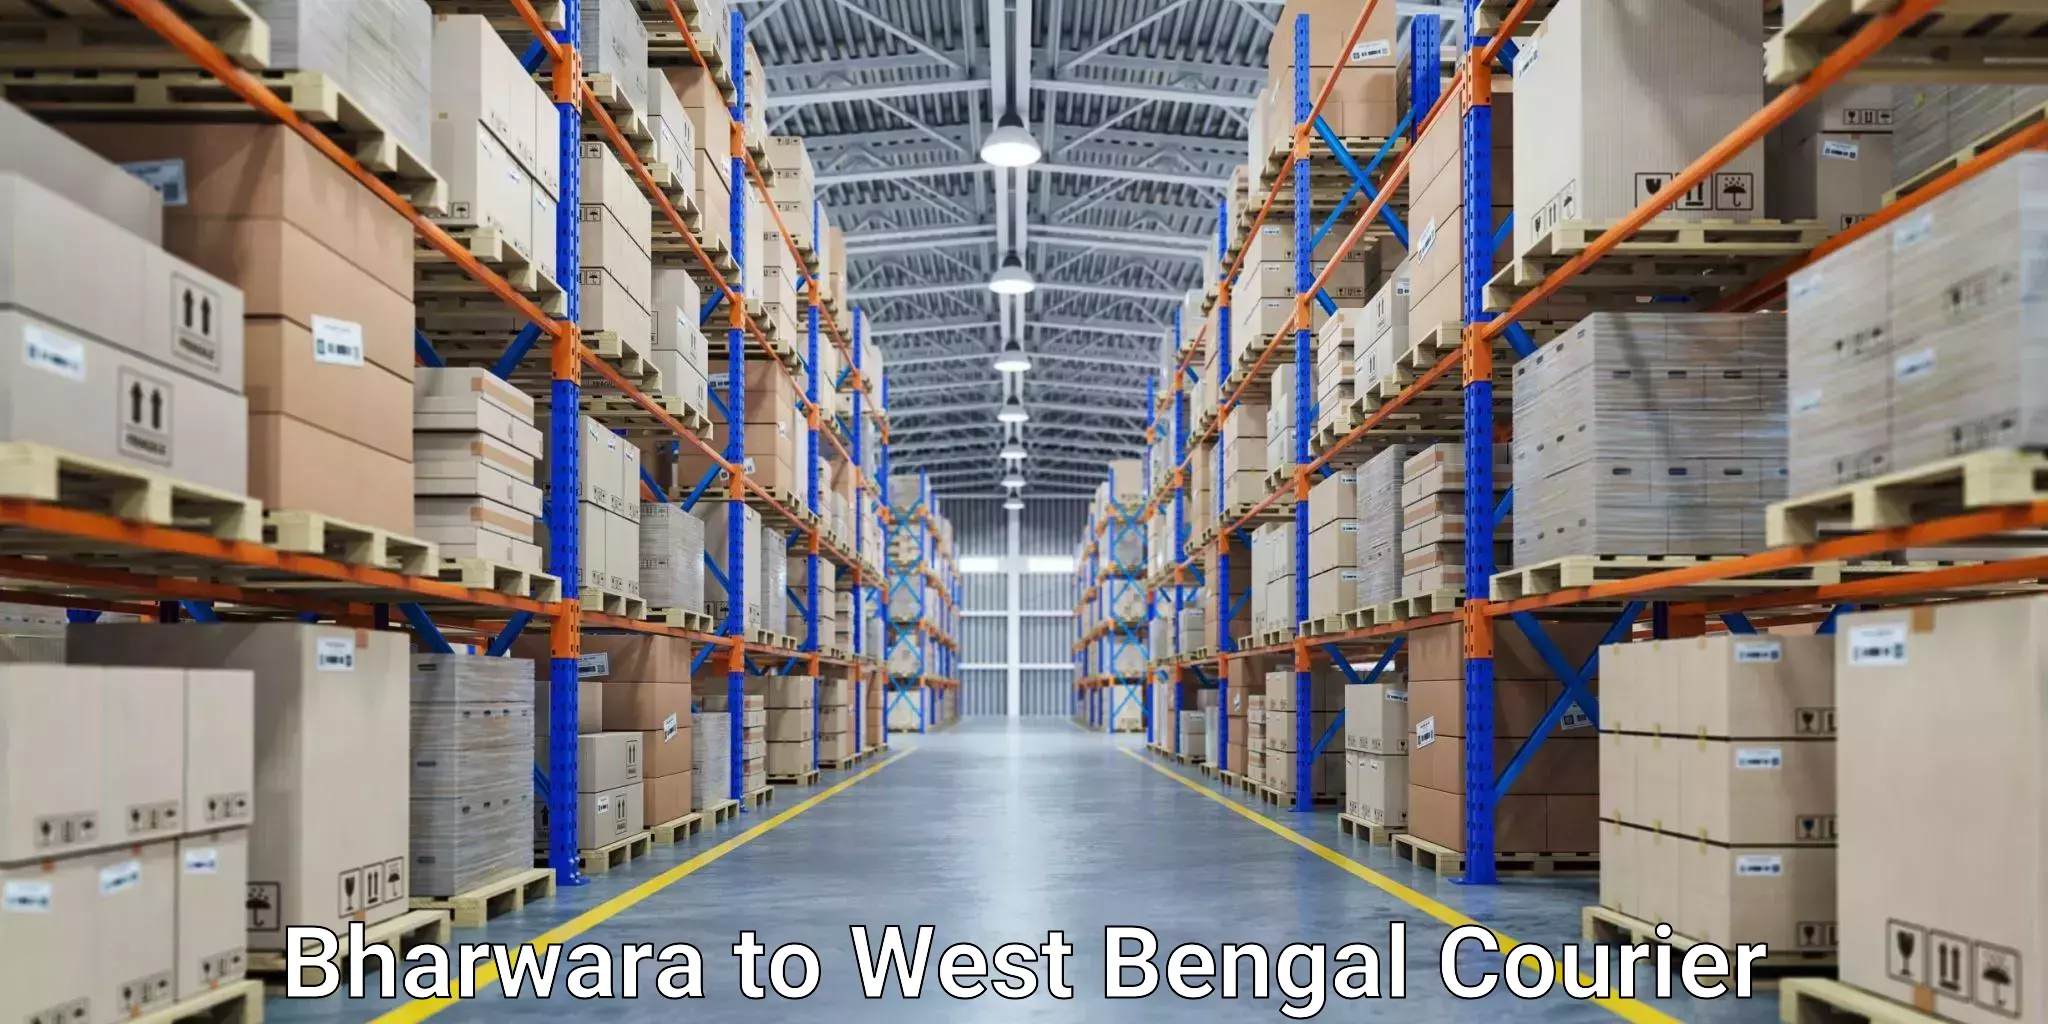 Express logistics providers Bharwara to Binnaguri